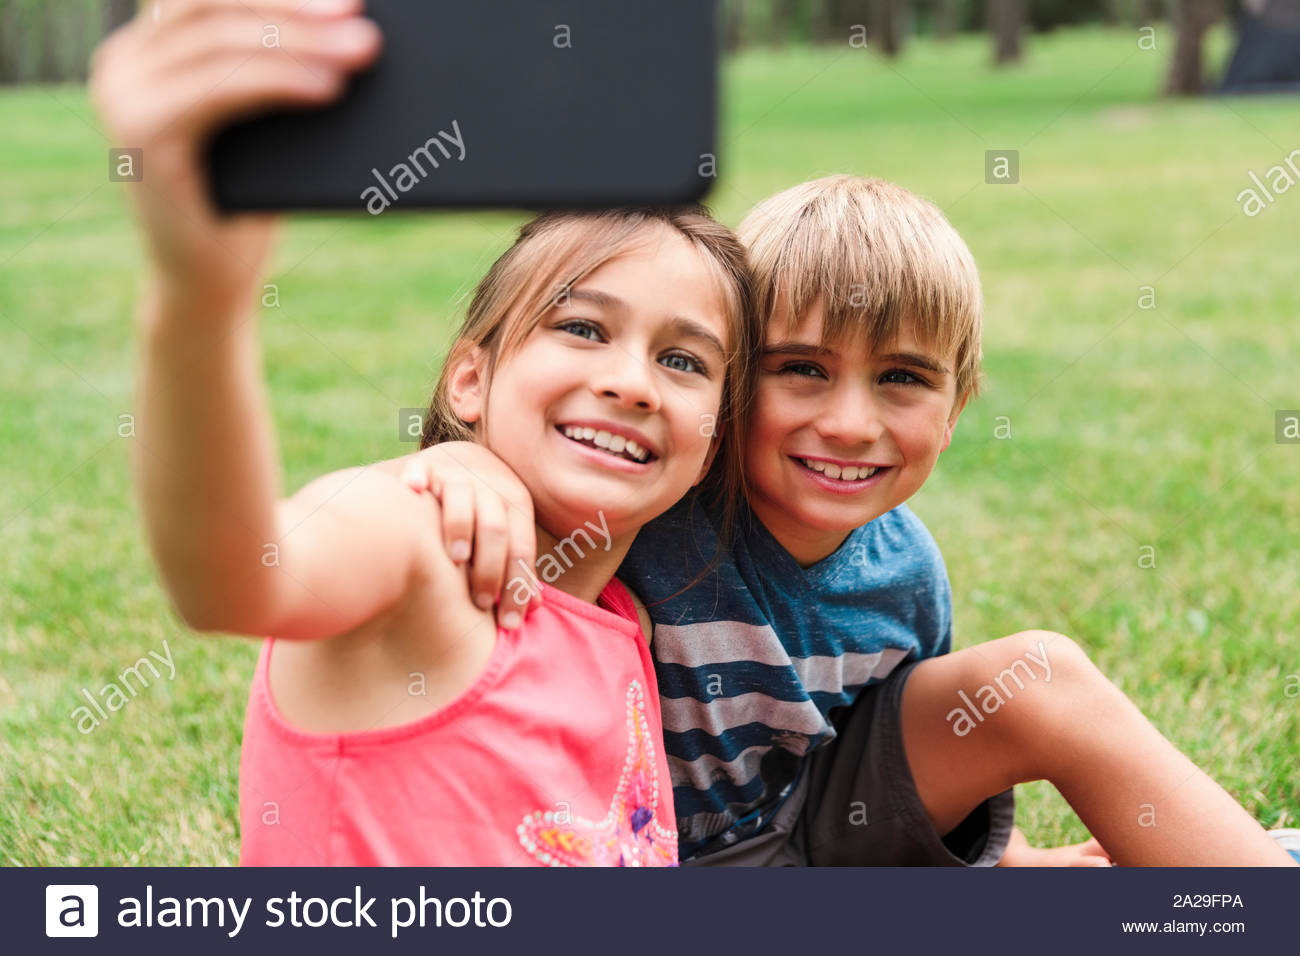 Niña y Niño fotografiando a sí mismos con el smartphone Foto de stock